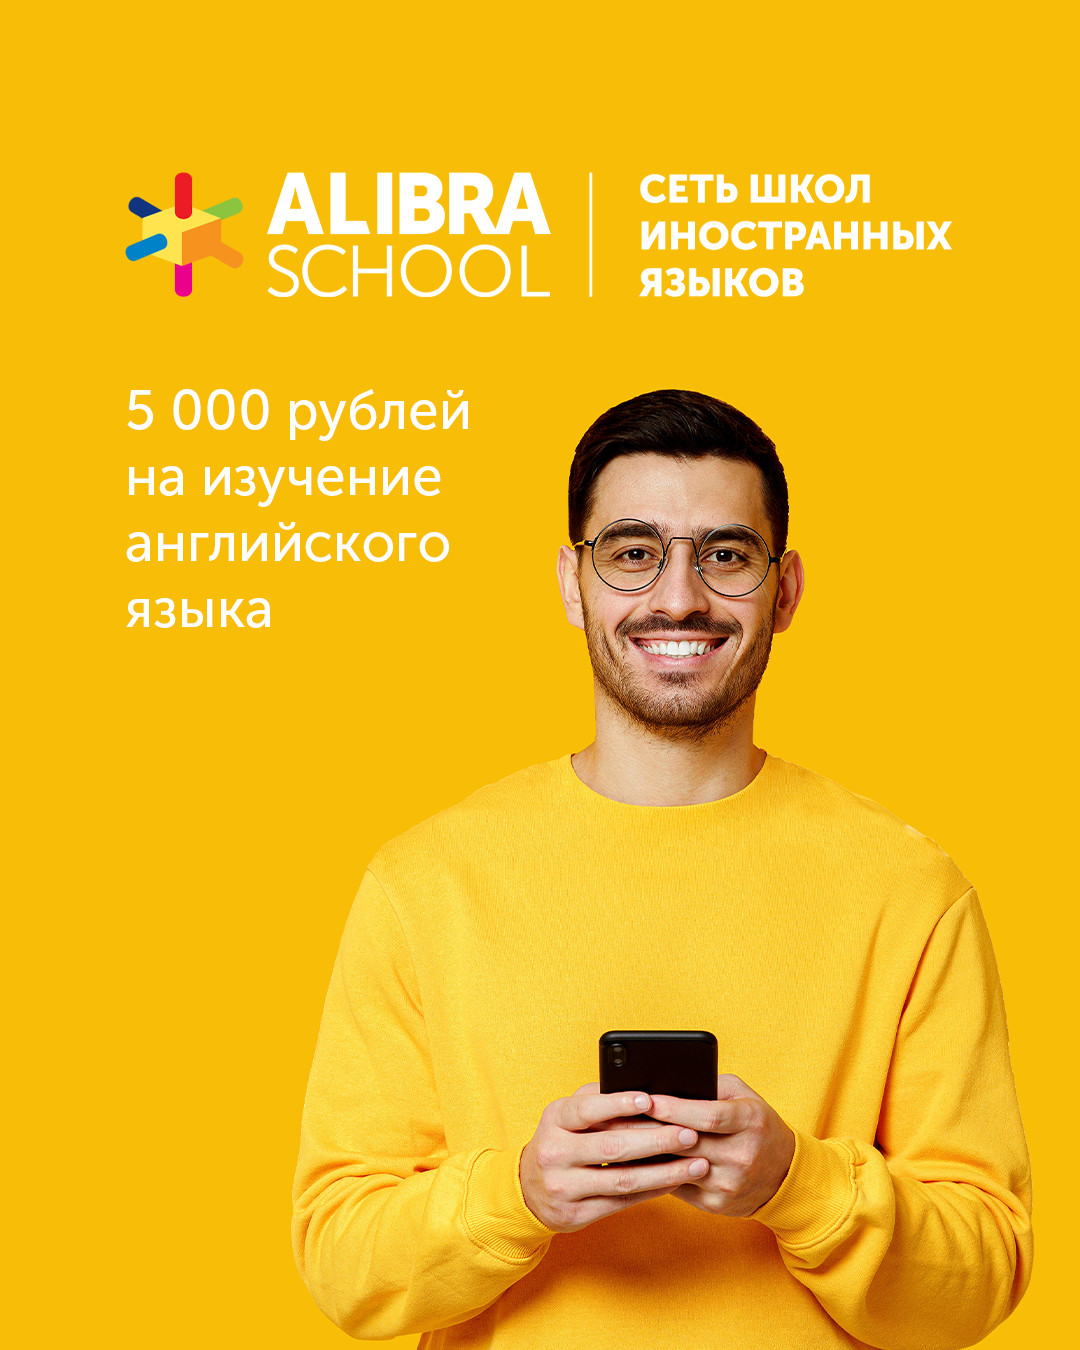 5 000 рублей на изучение английского языка в ALIBRA SCHOOL 